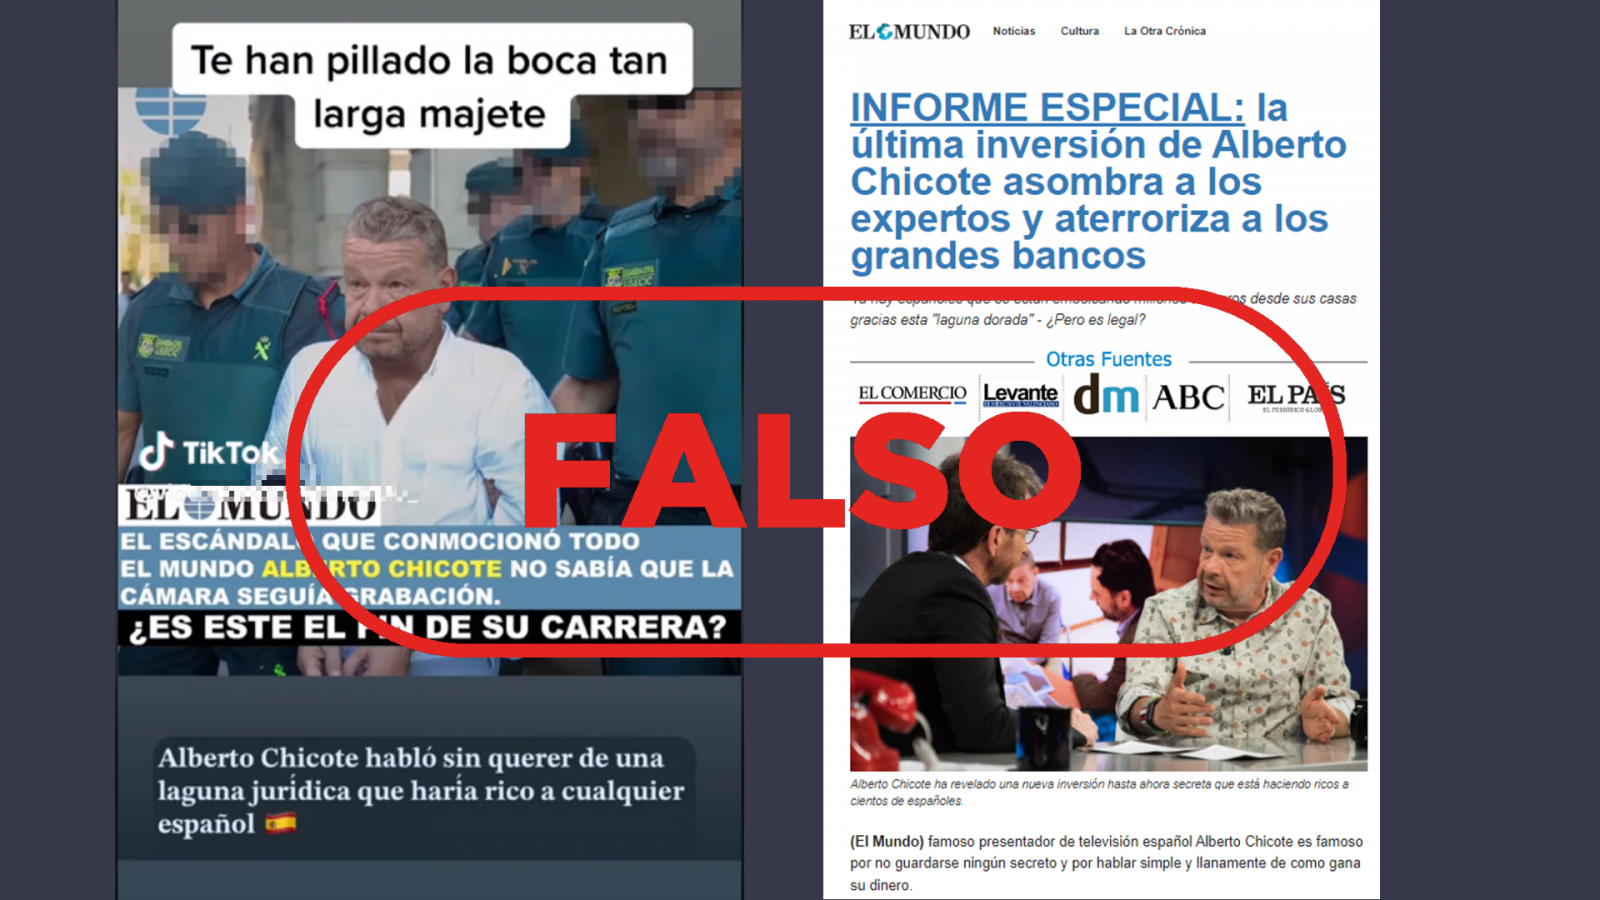 Vídeo de TikTok que comparte el falso arresto de Alberto Chicote junto a la web fraudulenta que suplanta al diario El Mundo, con el sello 'Falso' en rojo